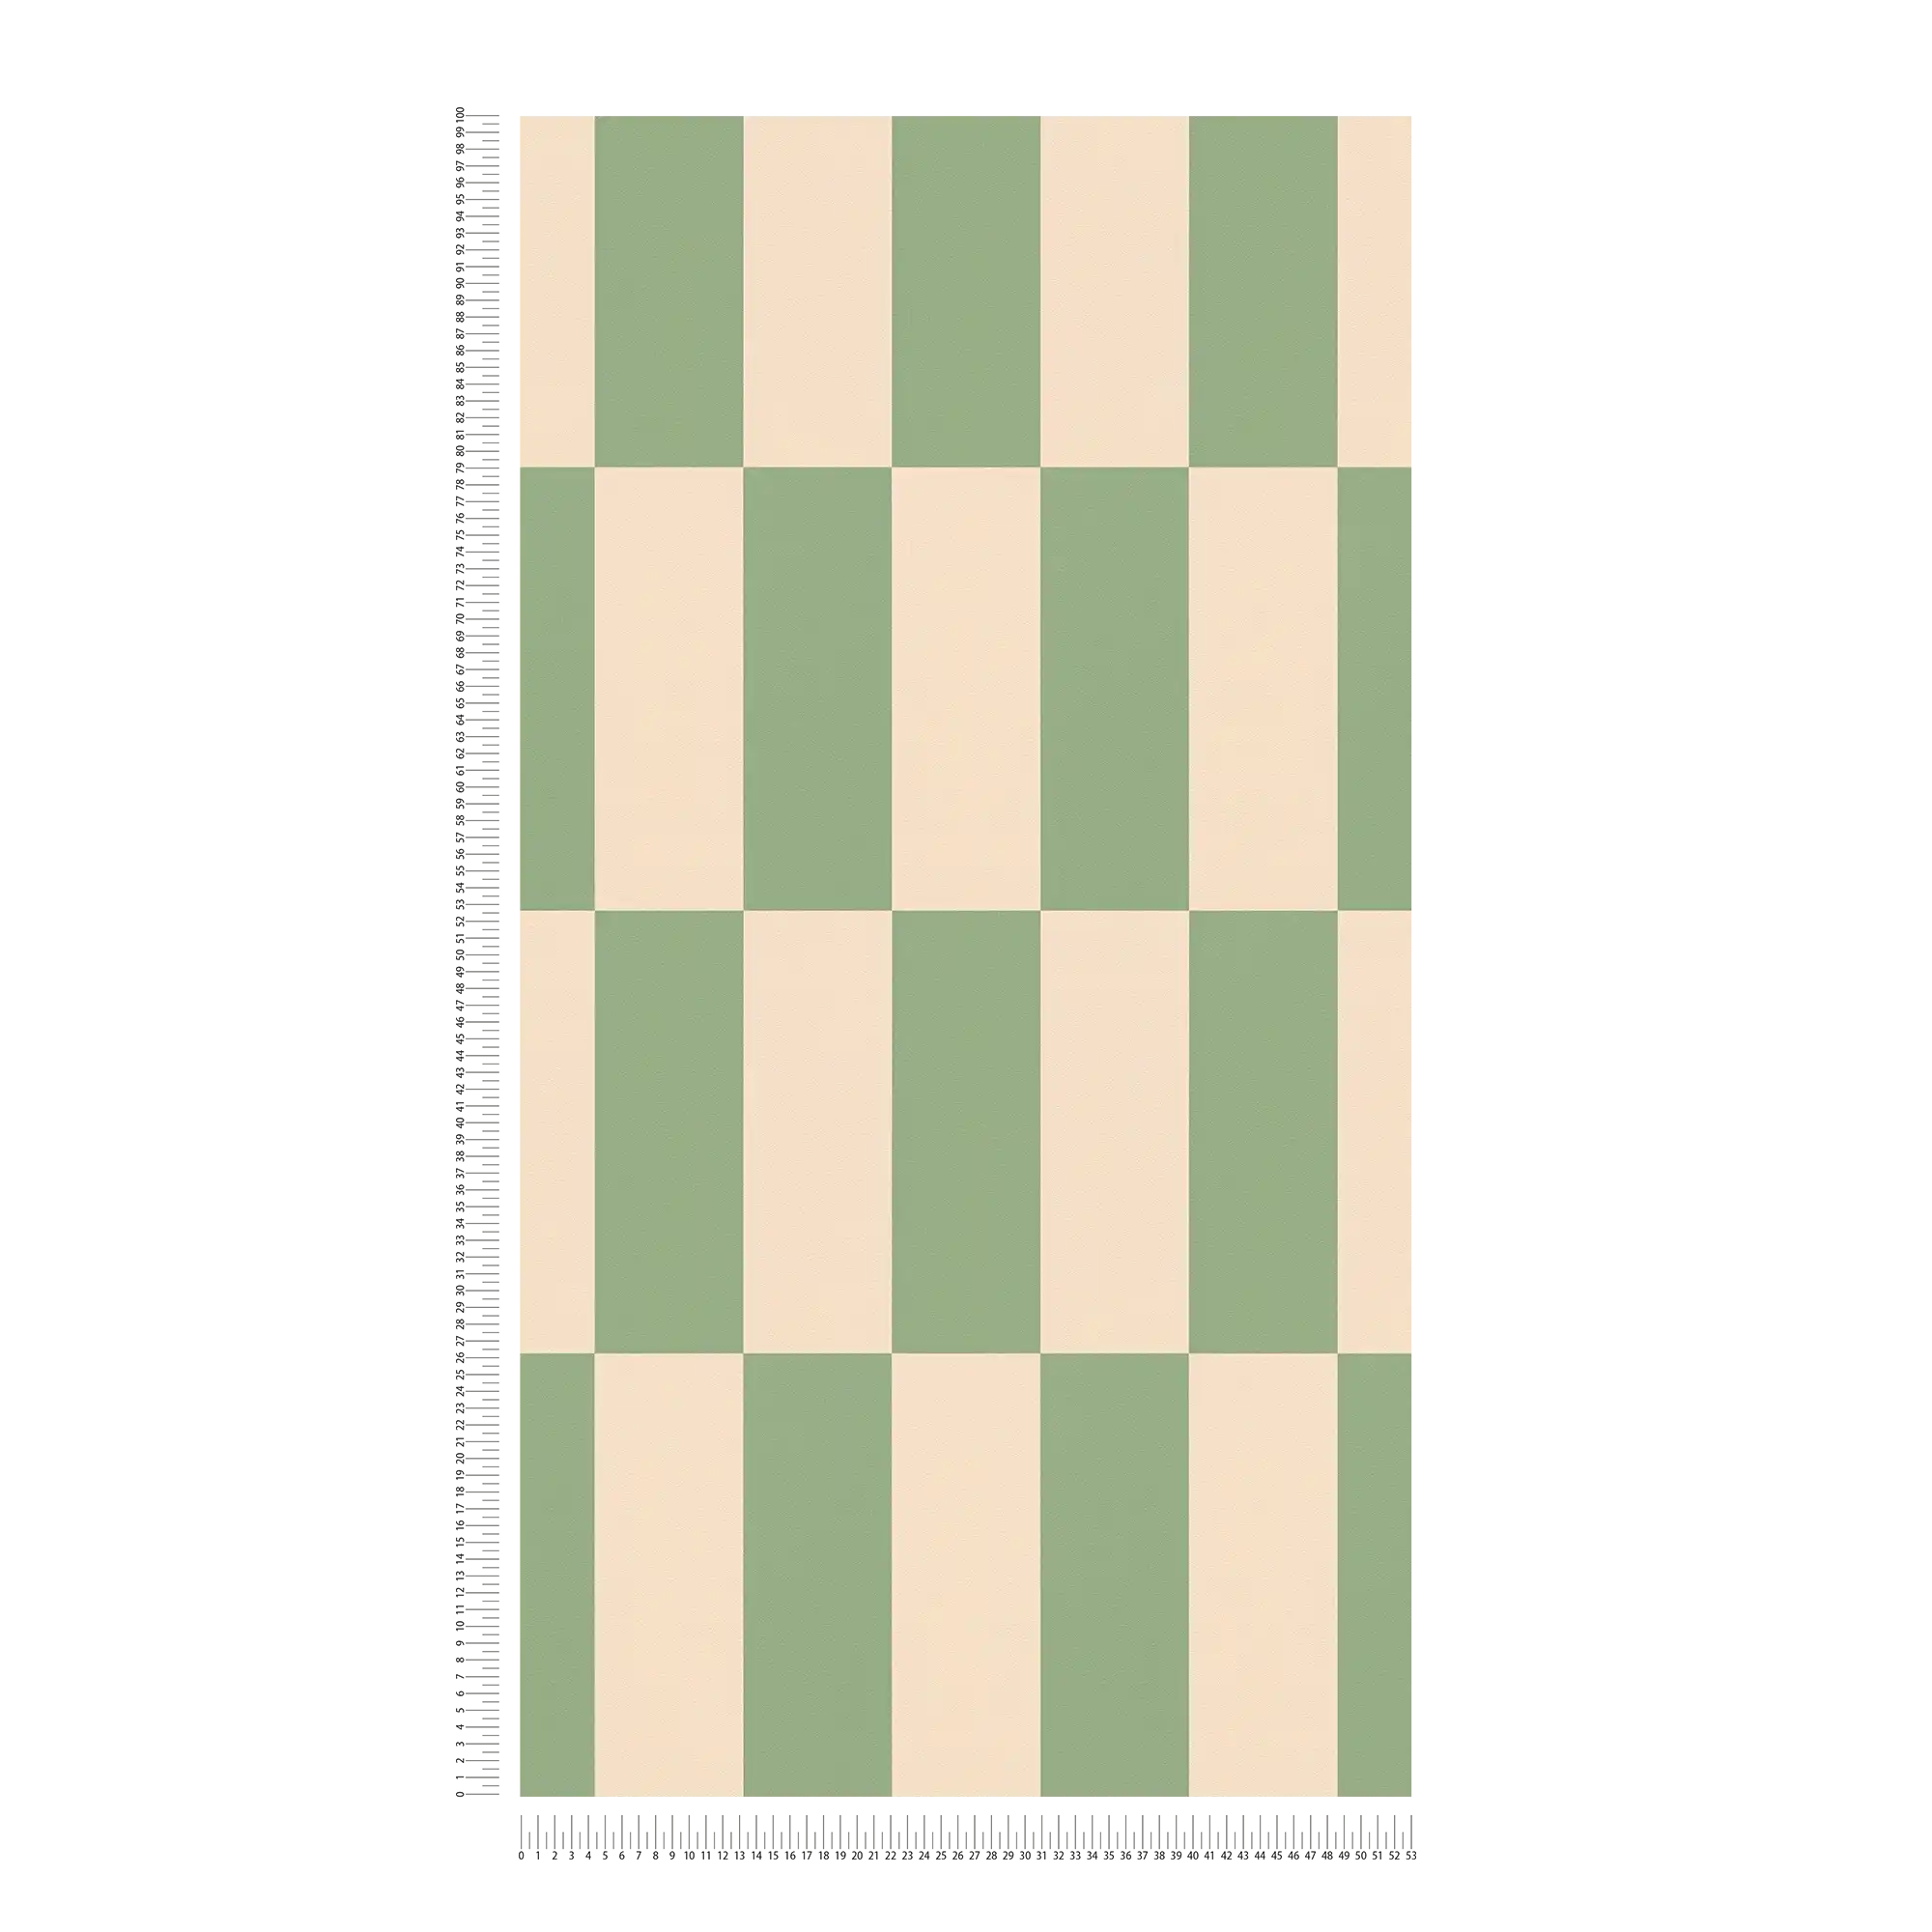             Papel pintado no tejido cuadrados gráficos bicolor - beige, verde
        